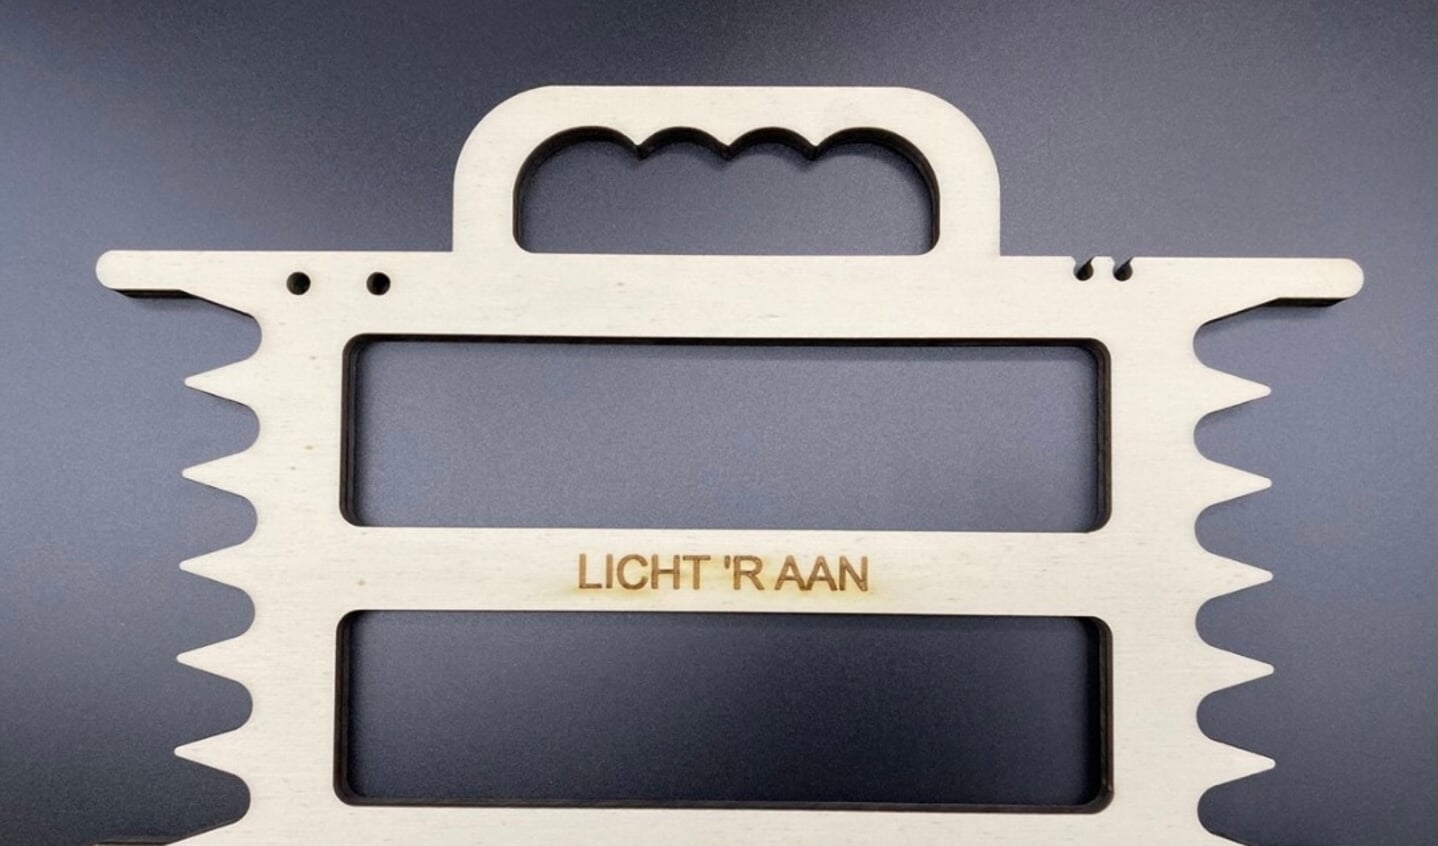 De Licht 'R Aan verlichtingshaspel, om te voorkomen dat kerstverlichting in de knoop raakt.